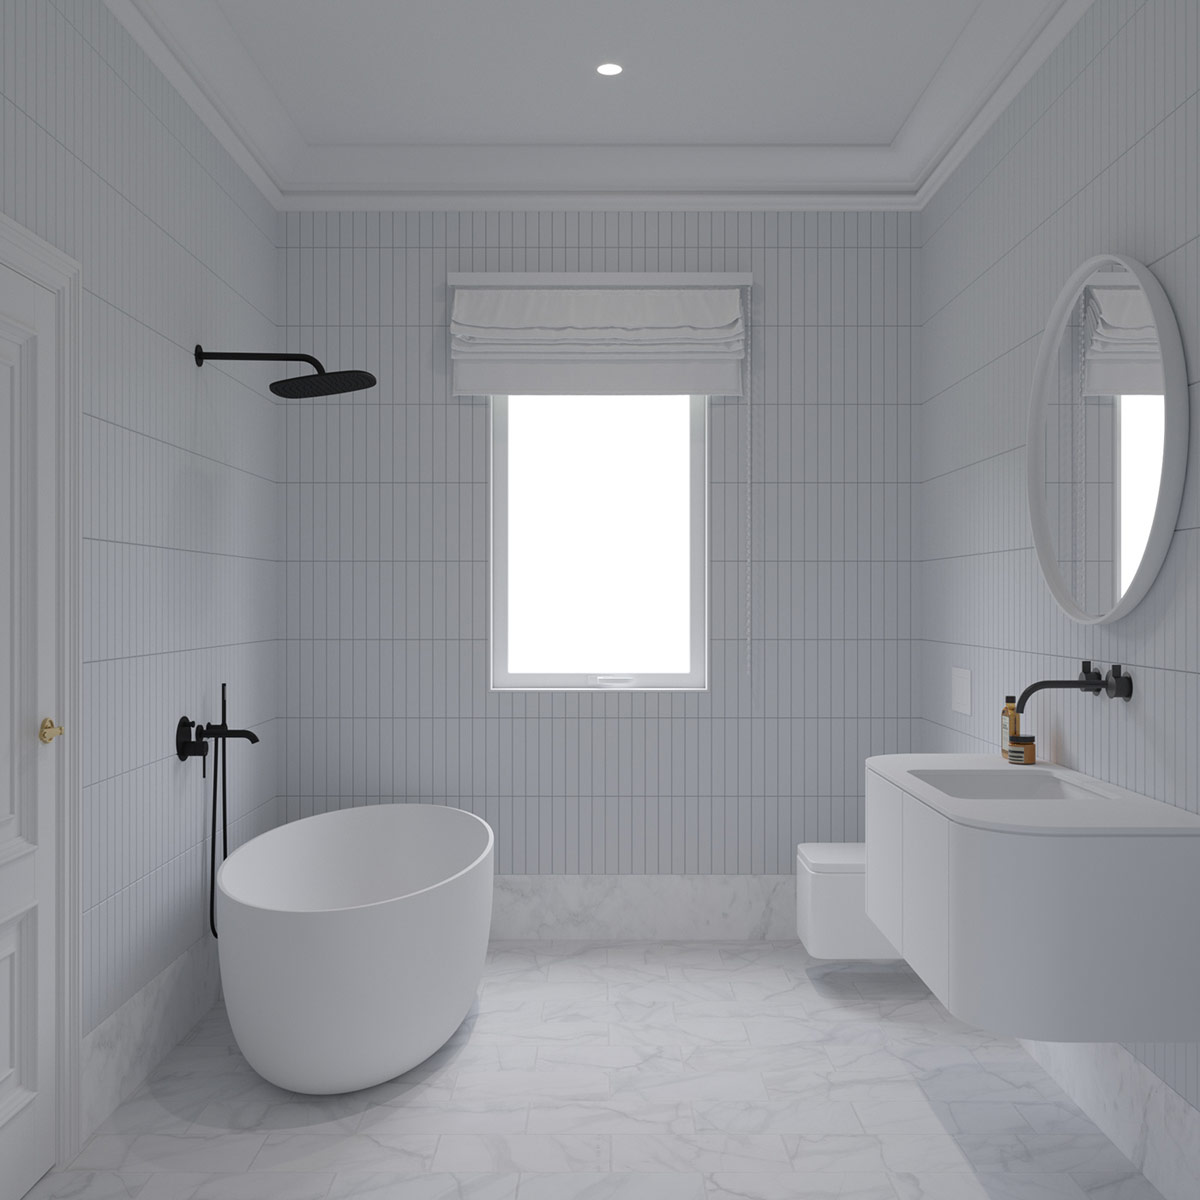 hình ảnh phòng tắm màu trắng xám chủ đạo, vòi sen, vòi rửa màu đen, cửa sổ kính có rèm che